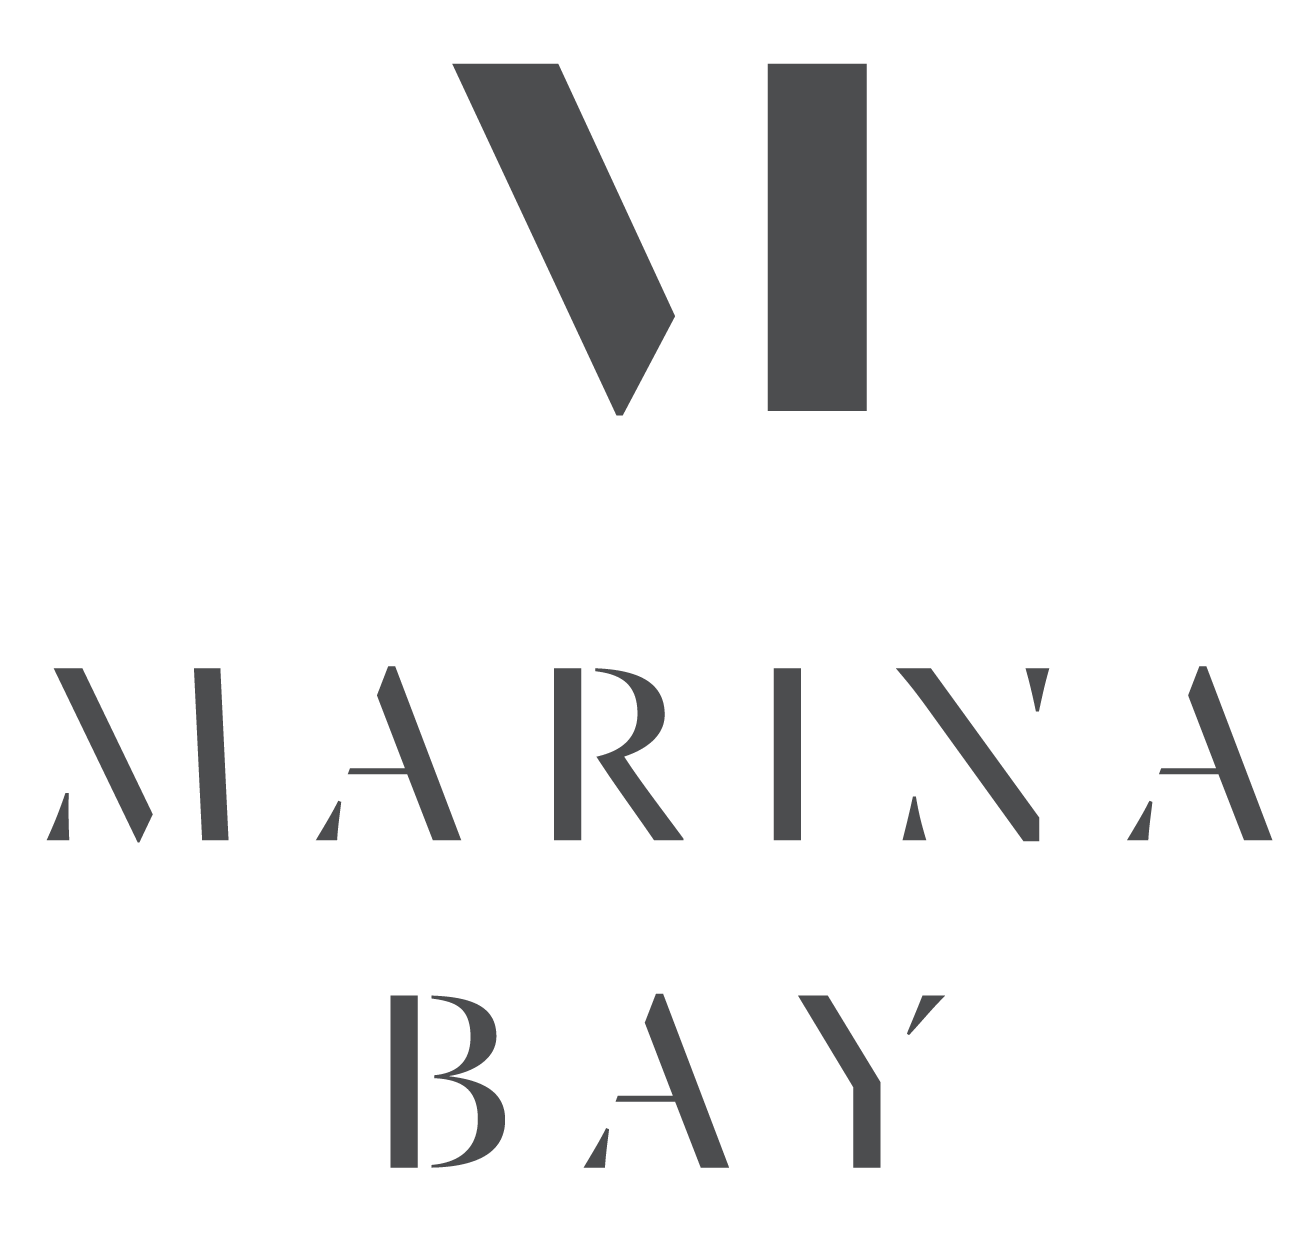 Marina Bay - Live Life in Full Glory